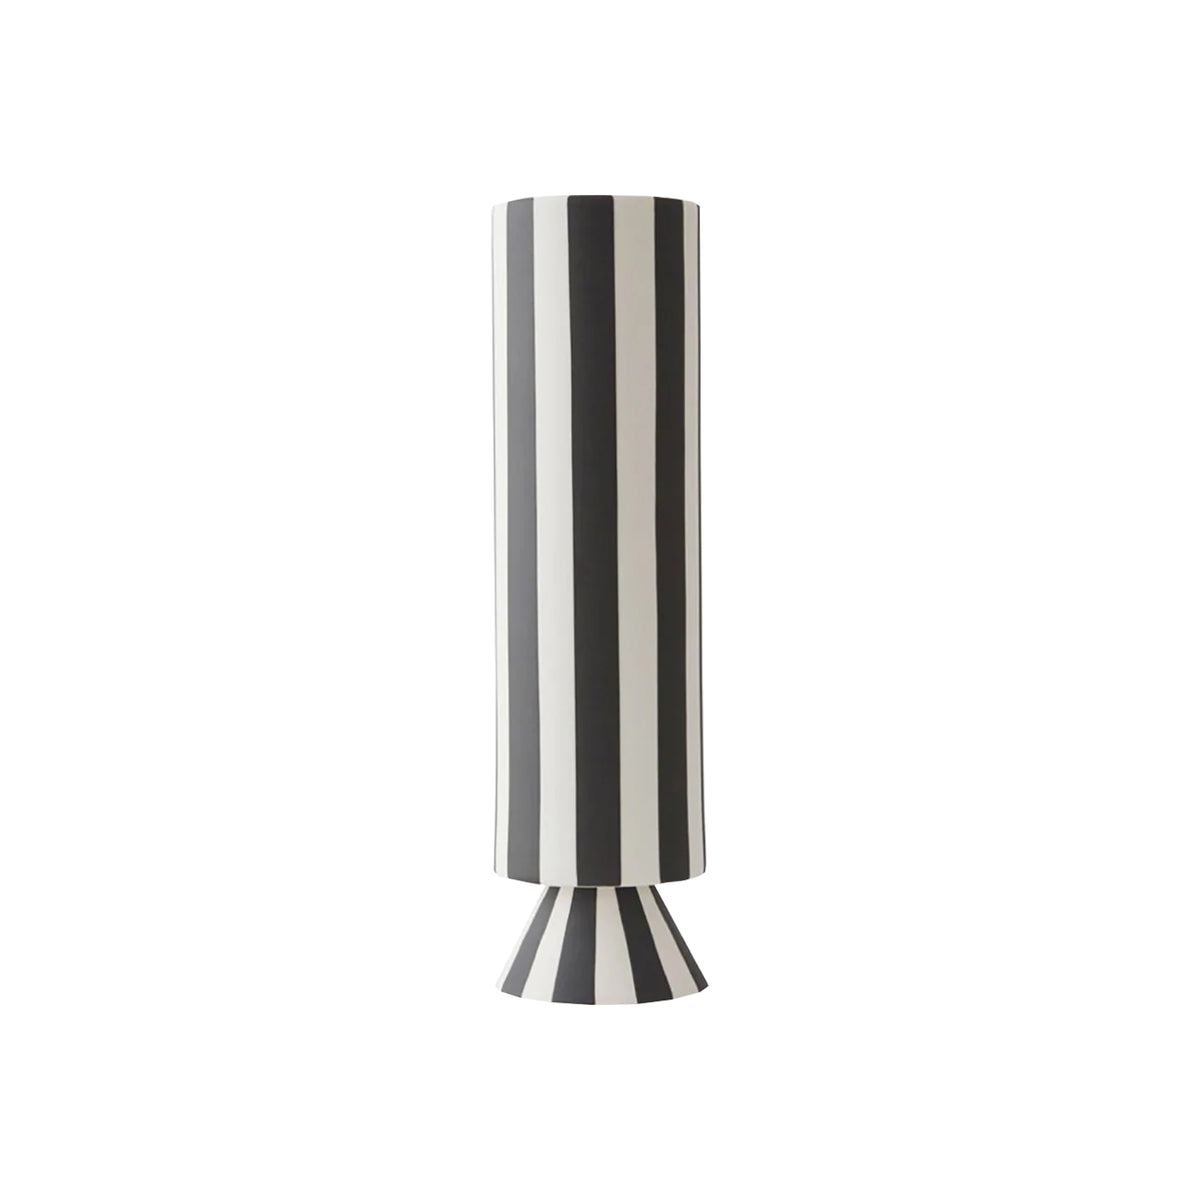 OYOY Toppu Vase - High - Black & White